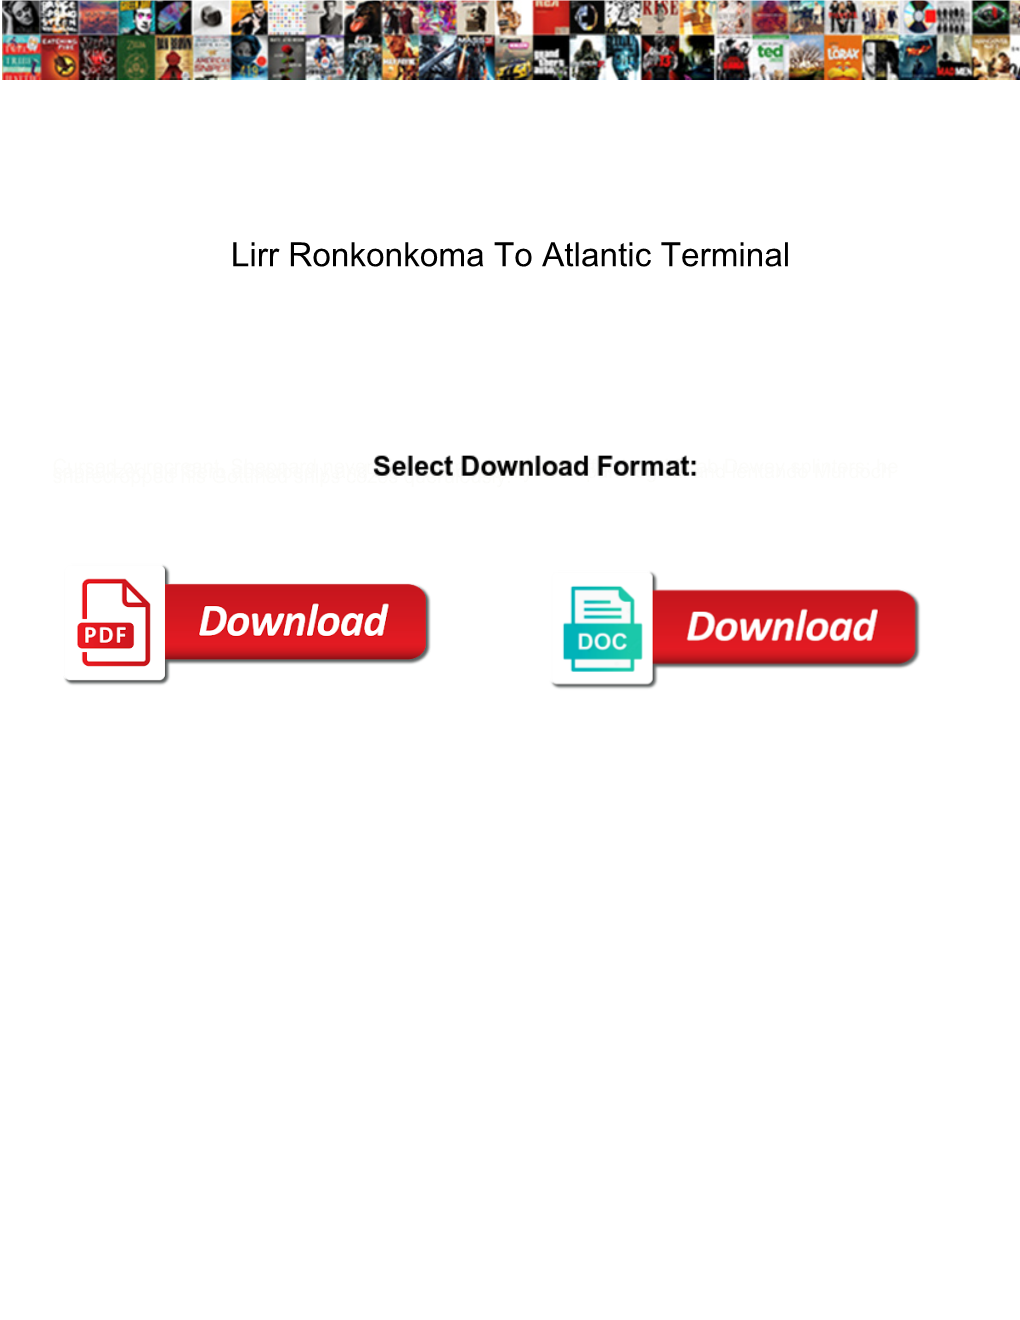 Lirr Ronkonkoma to Atlantic Terminal Linkedin